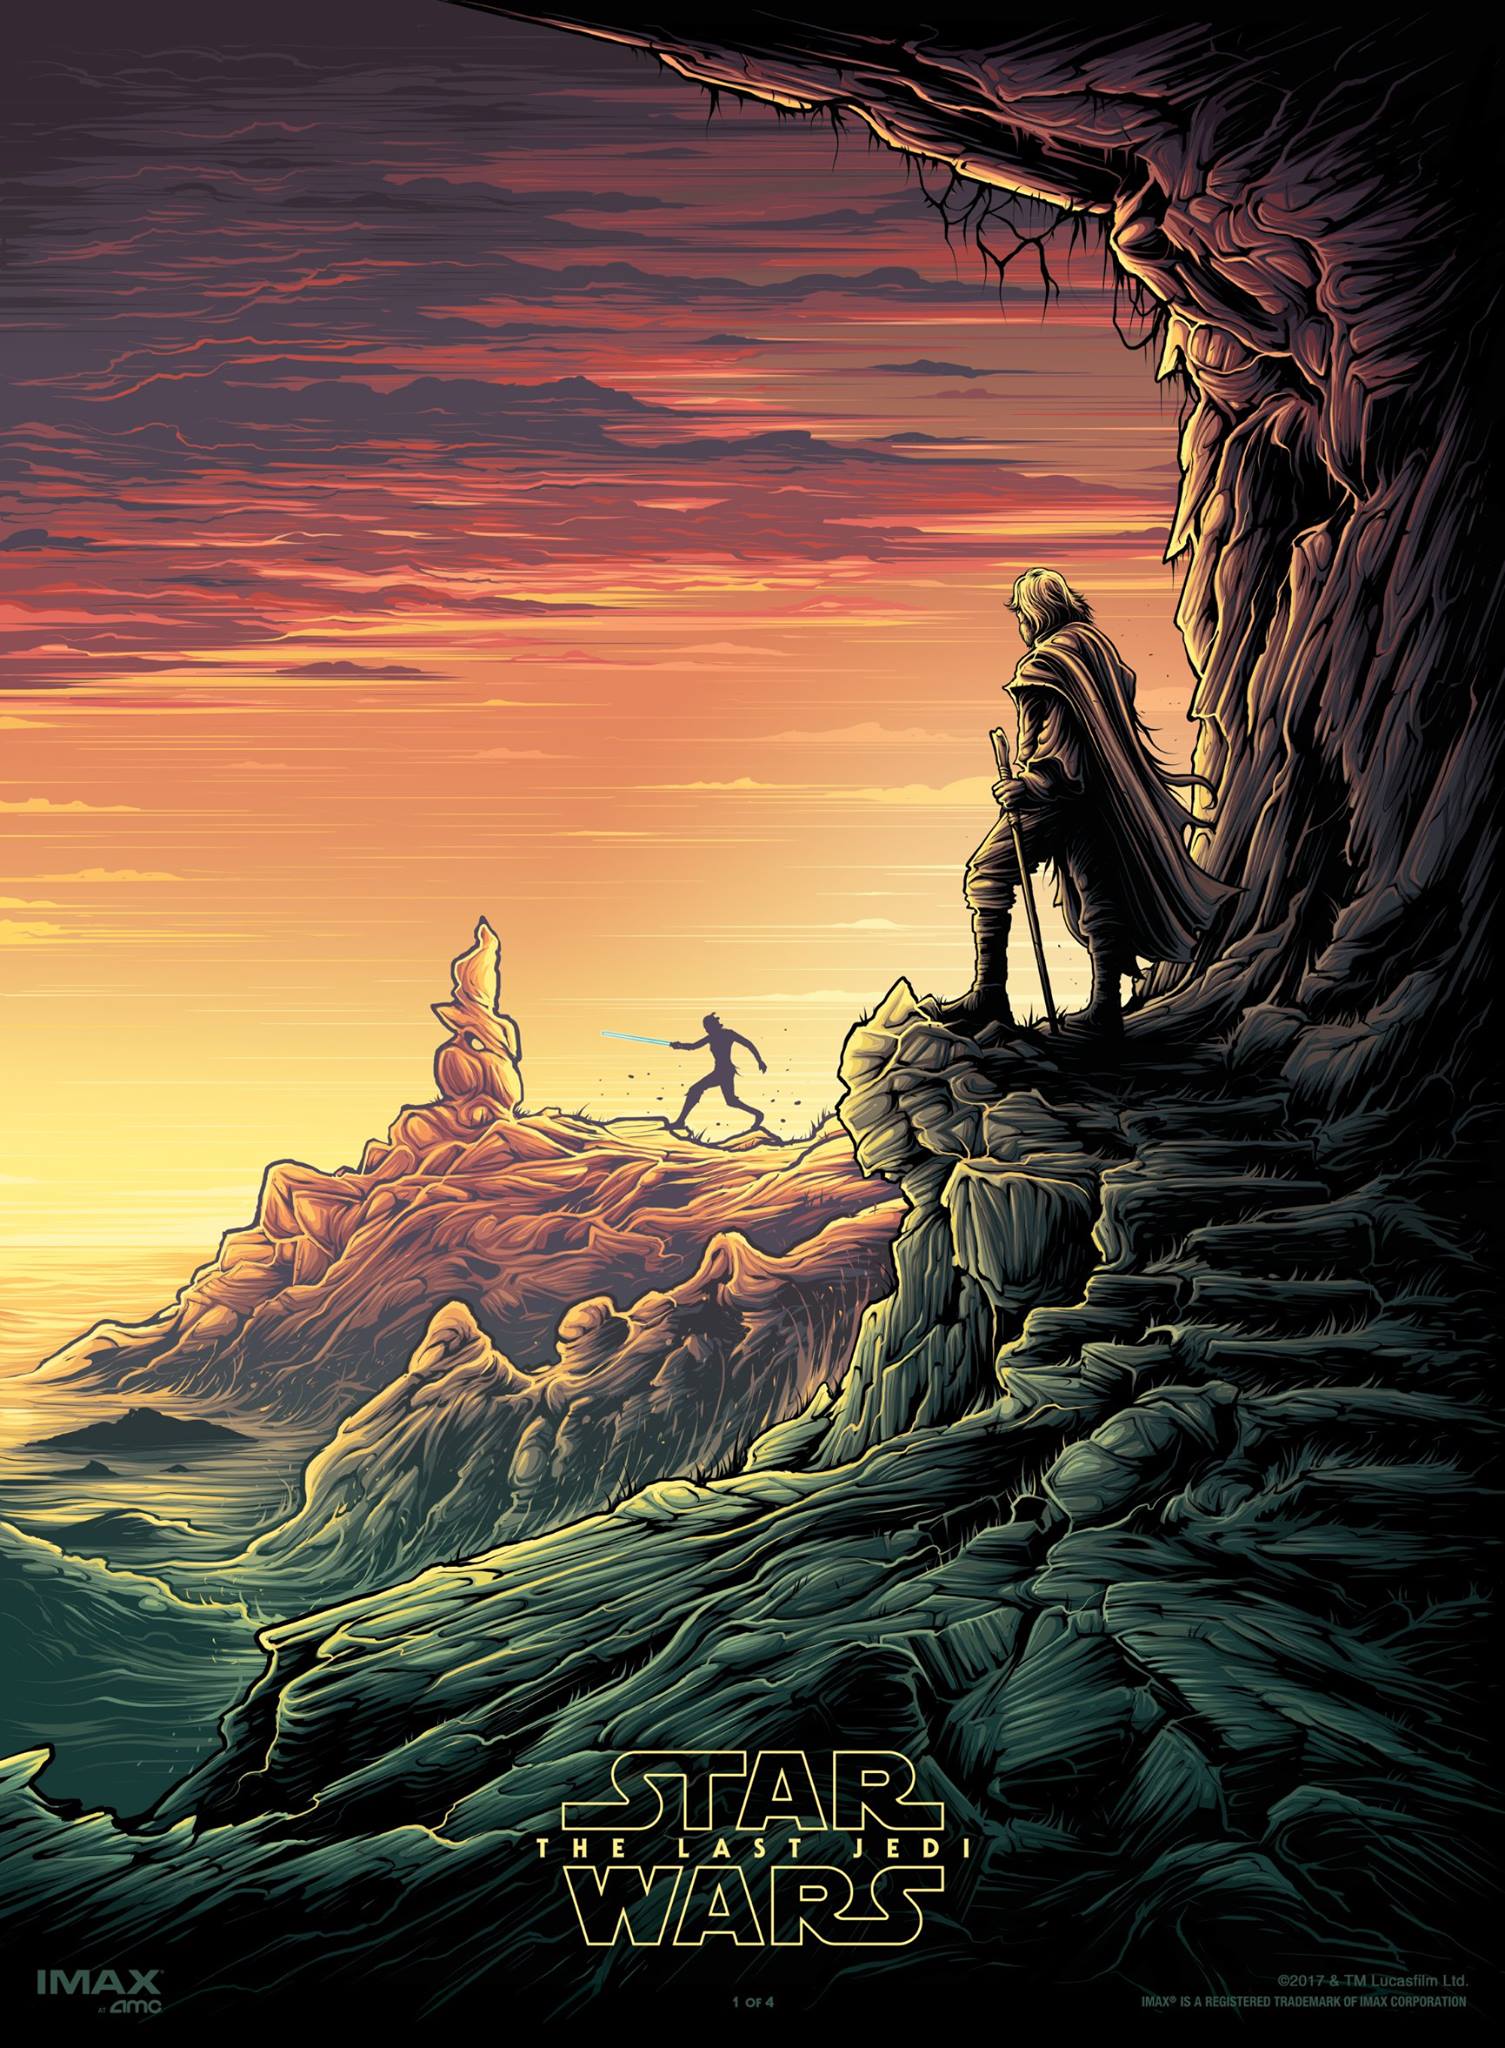 Star Wars: The Last Jedi AMC IMAX Poster #1